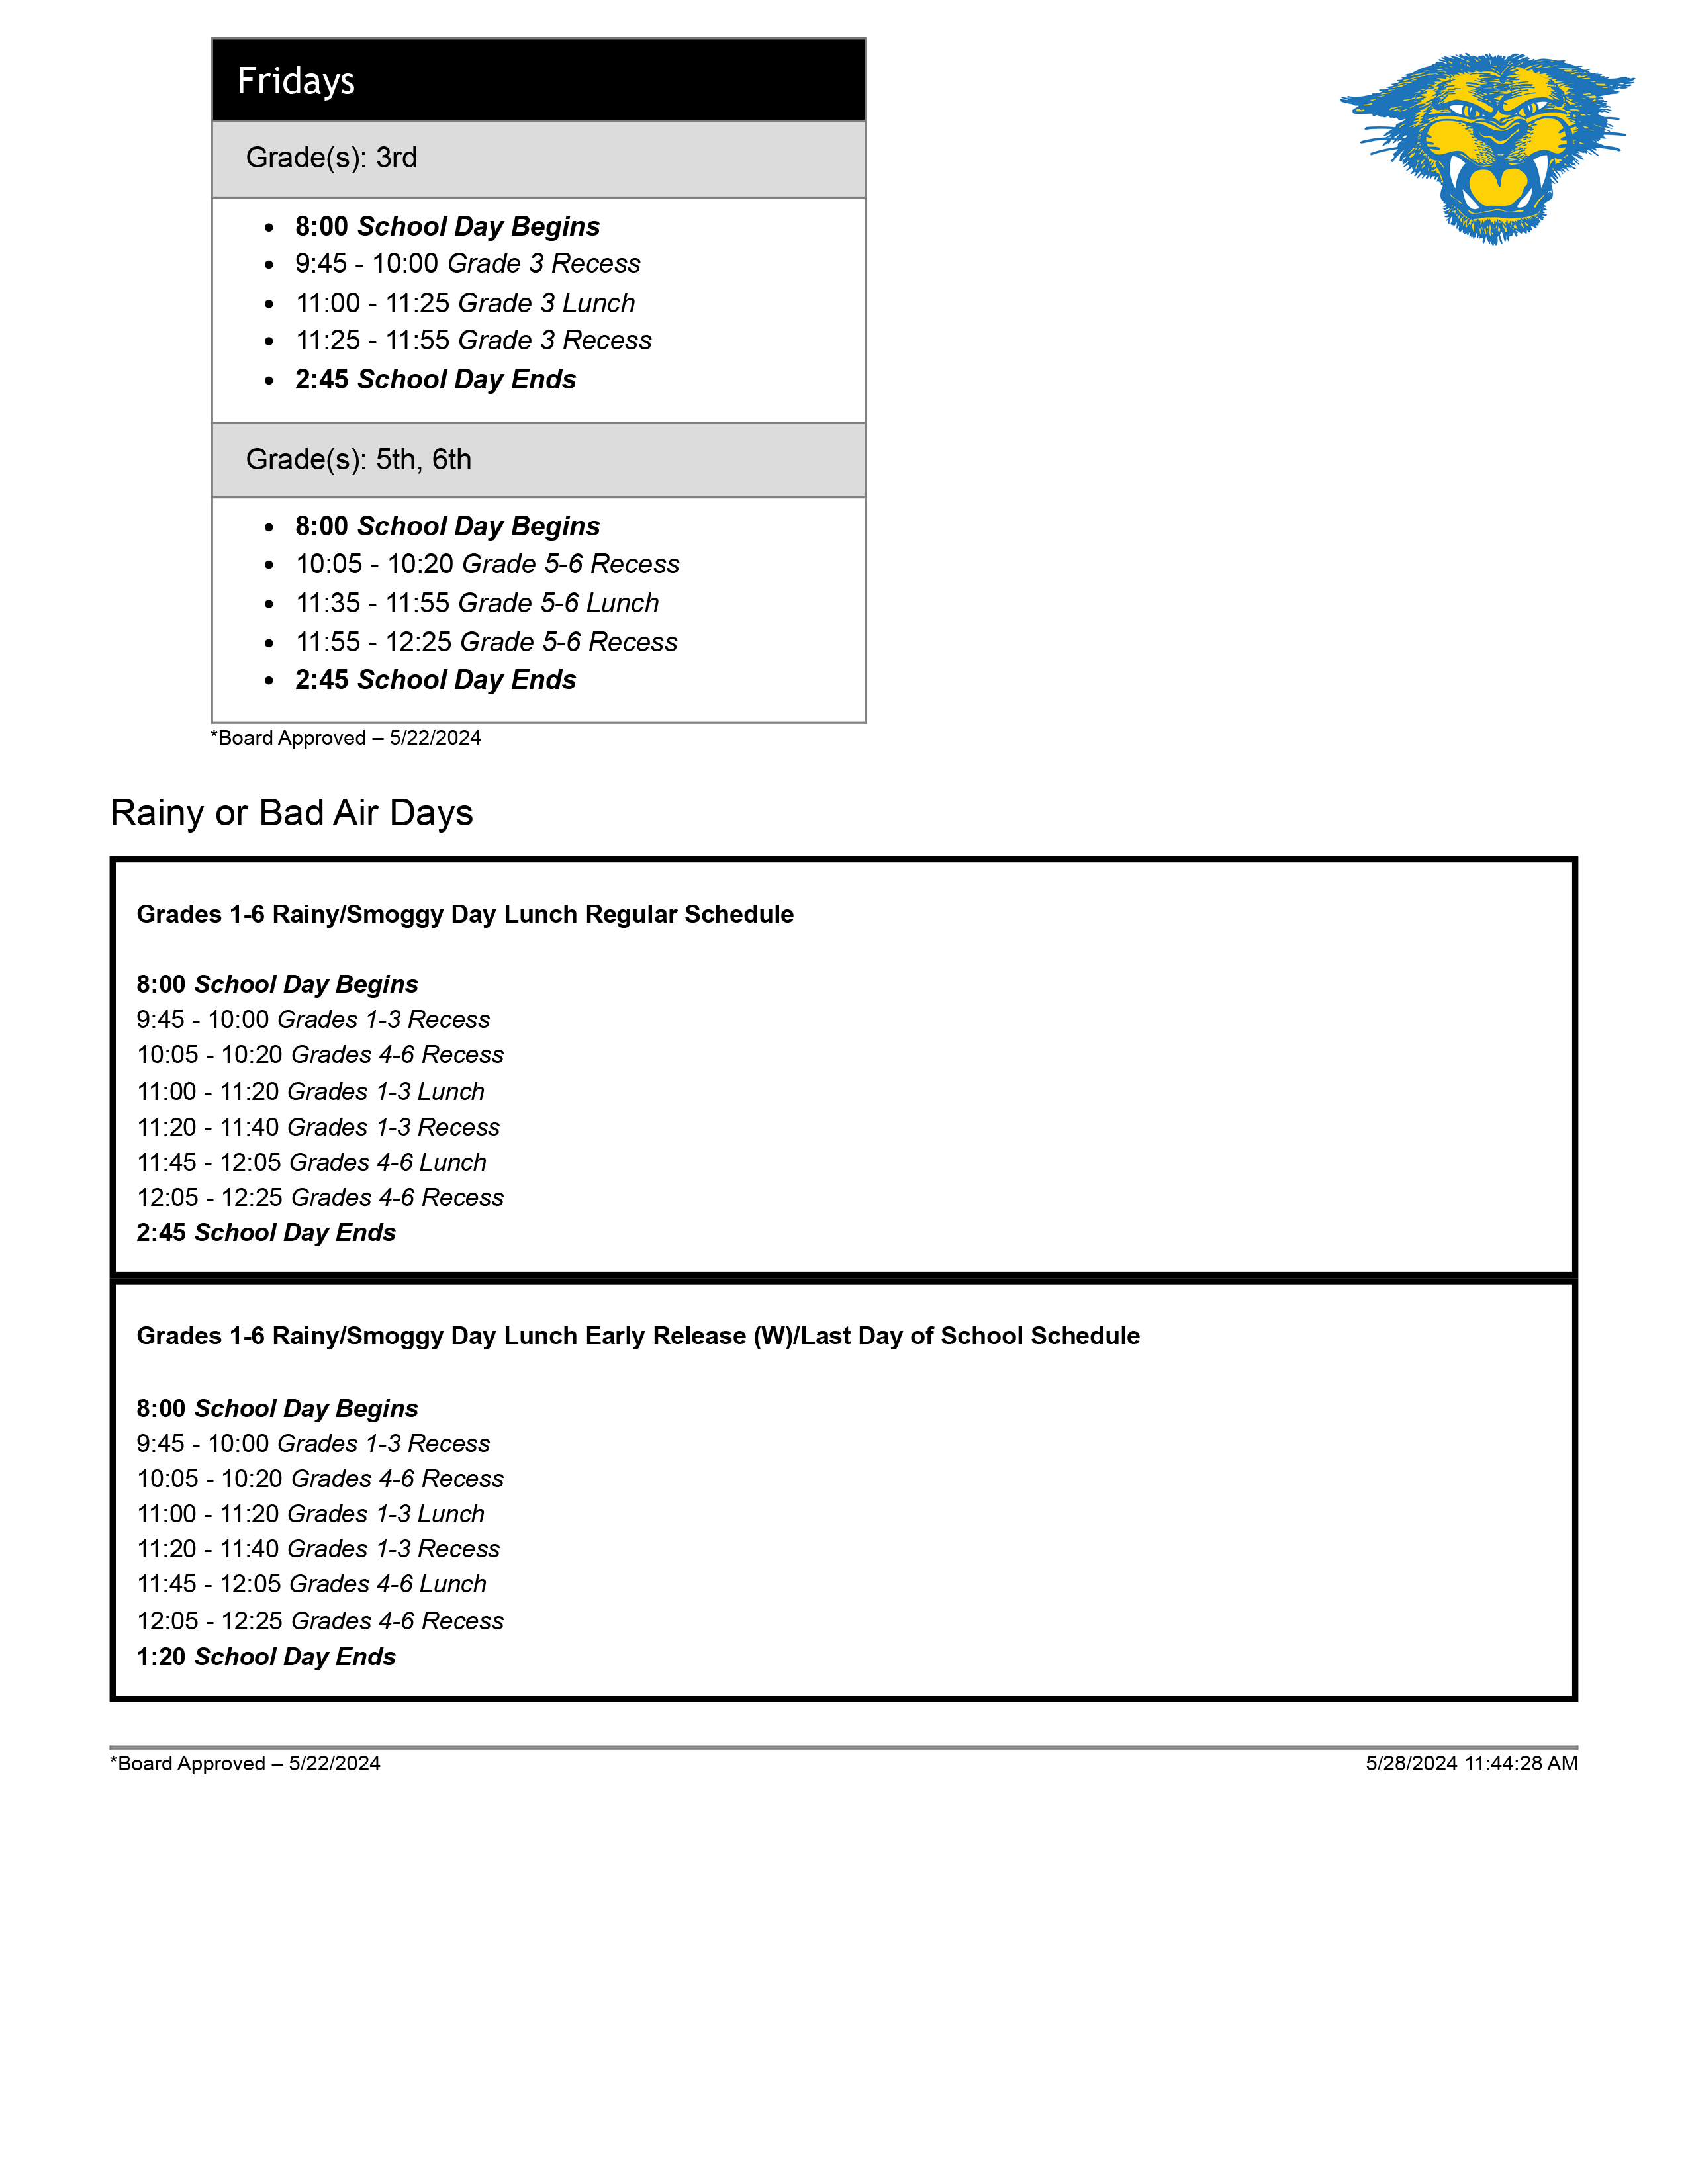 24-25 bell schedule pg 2